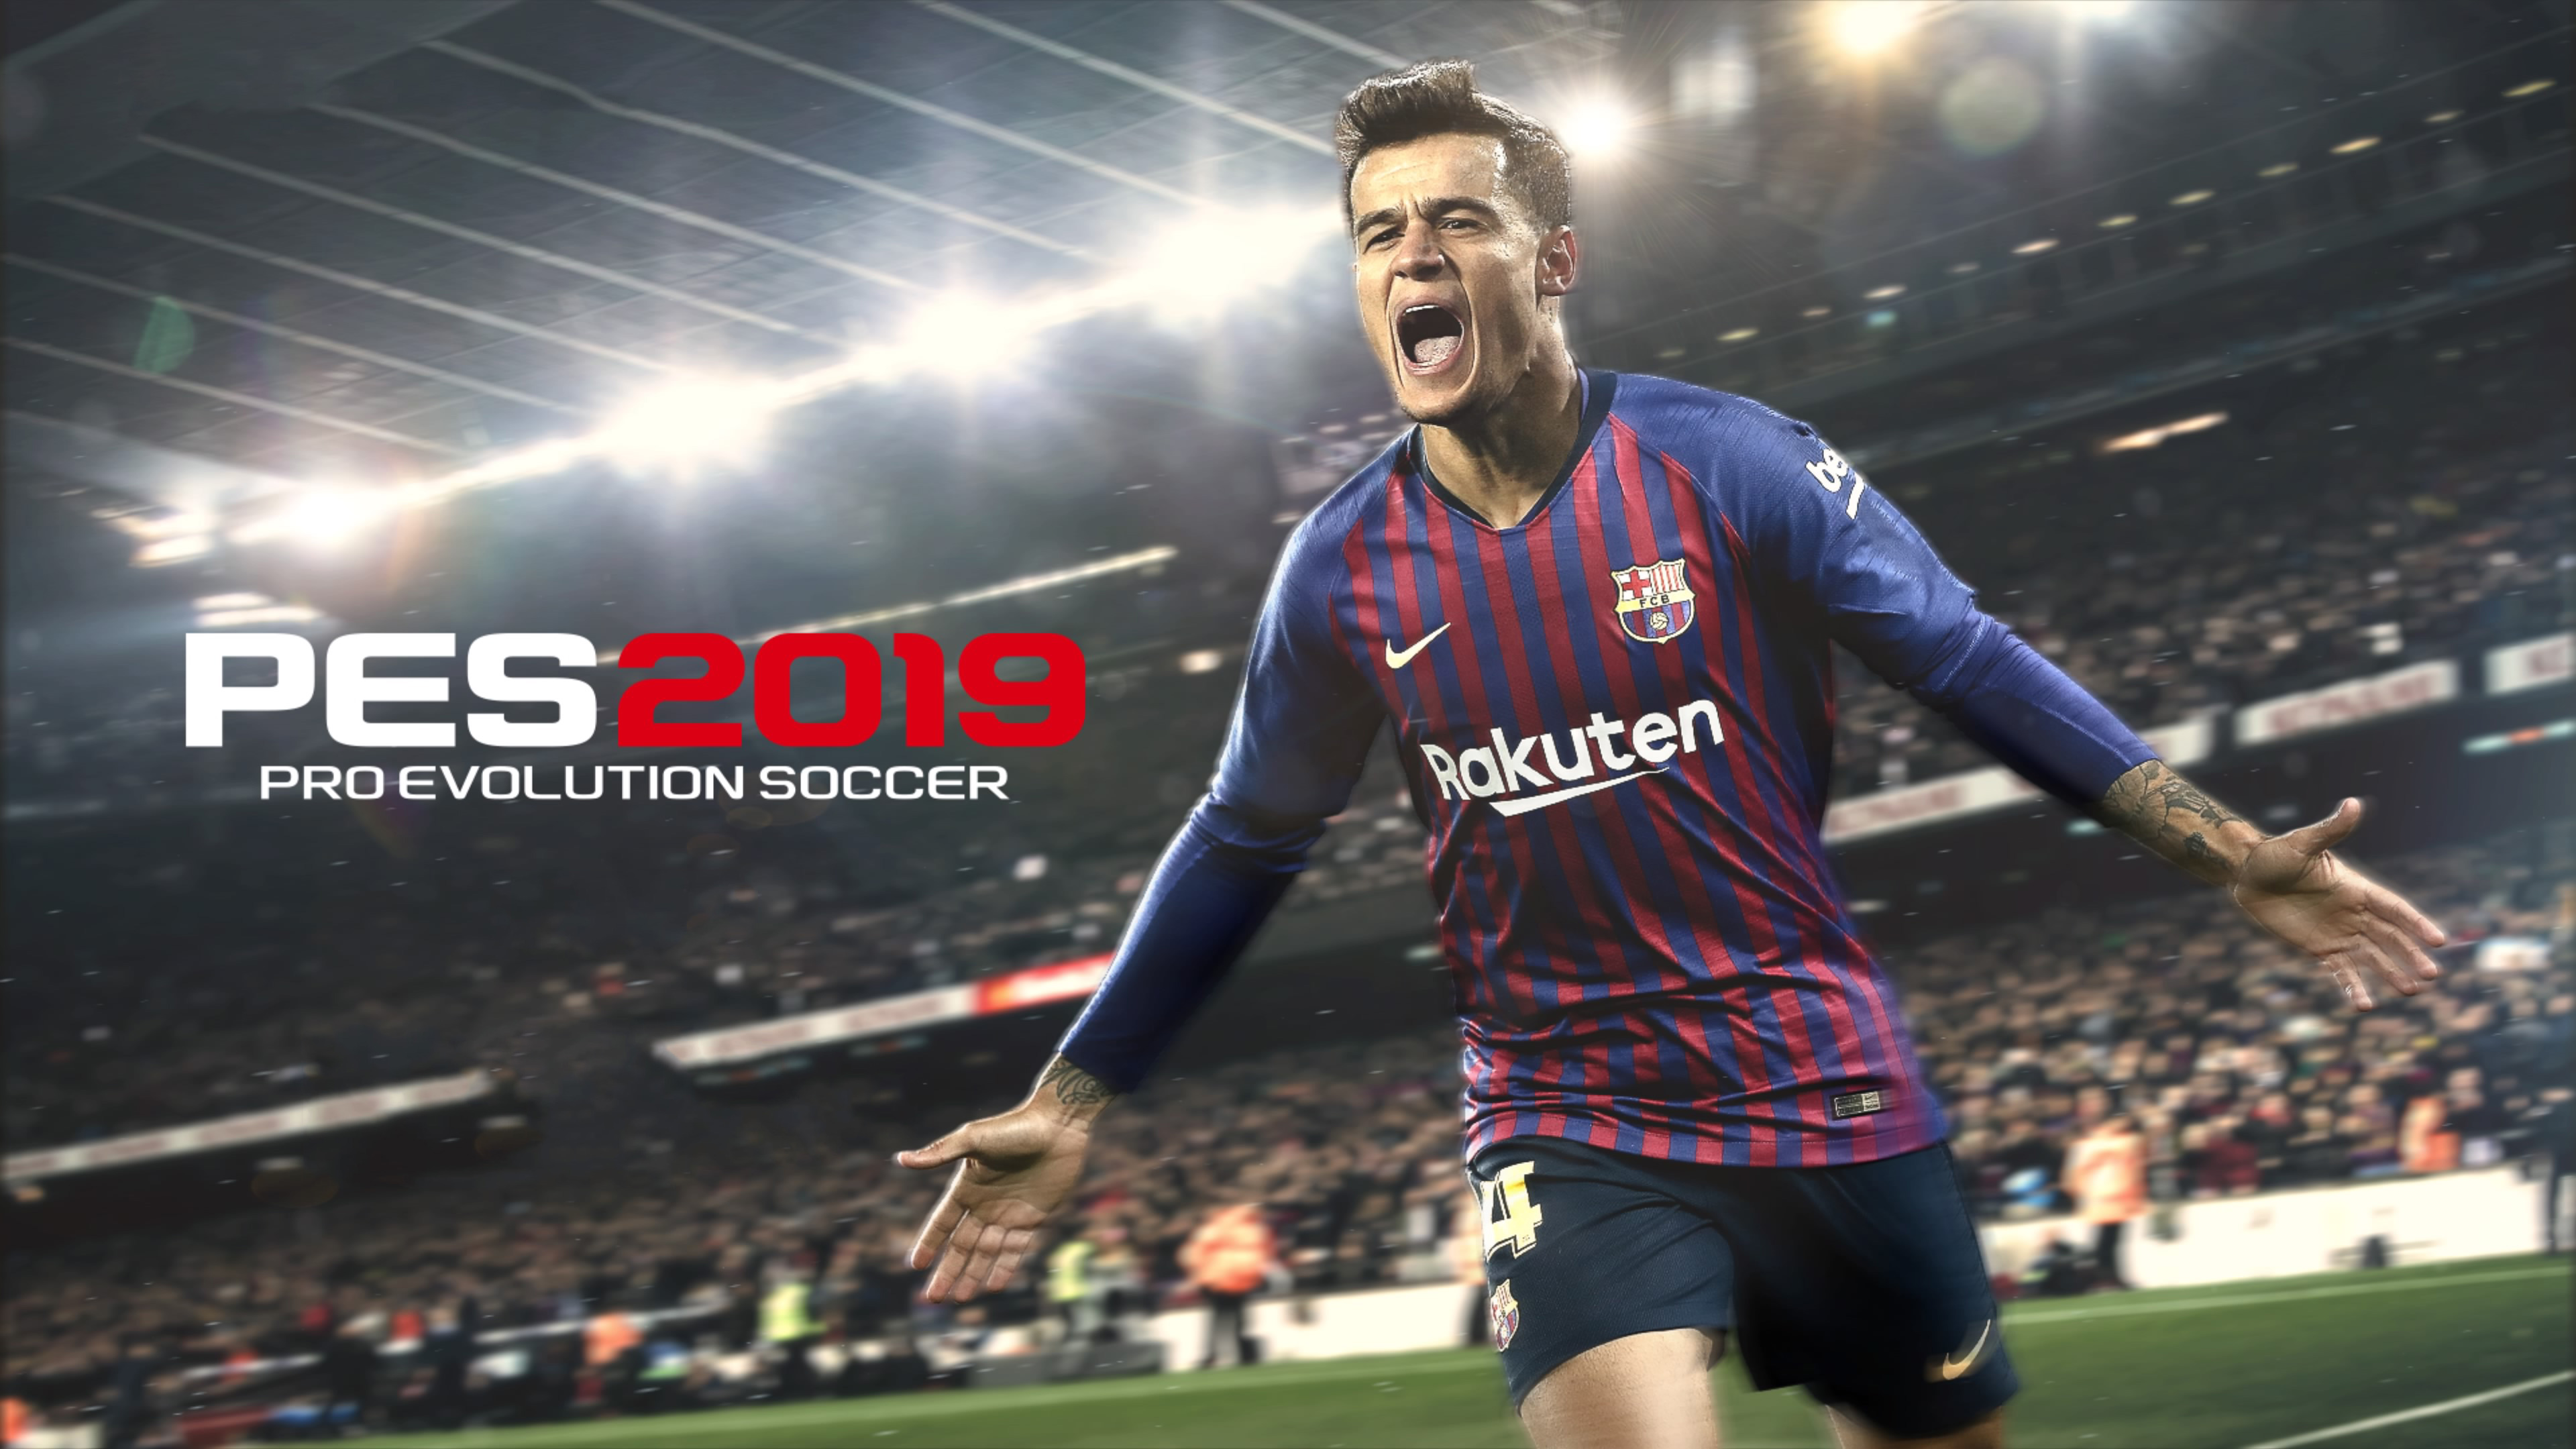 Fondos de pantalla Pro Evolution Soccer 2019 en Ultra HD | 4K - Gameranx